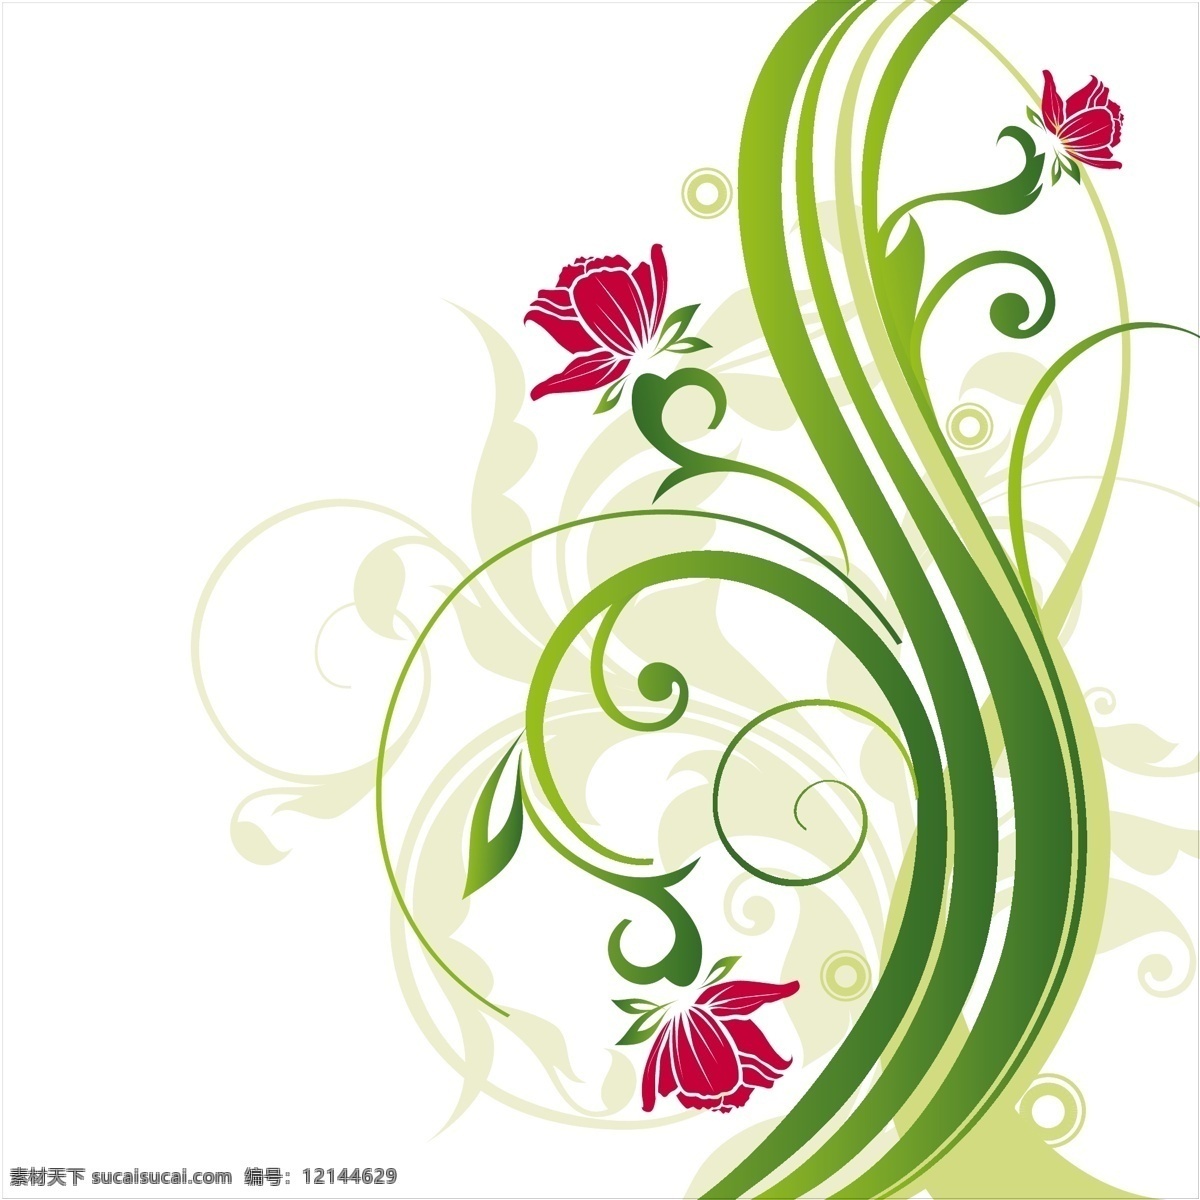 摘要背景设计 背景 花卉 抽象背景 抽象 树叶 绿色 花卉背景 绿色背景 壁纸 颜色 丰富多彩 背景绿色 绿叶 丰富的背景 背景色 背景花 彩色